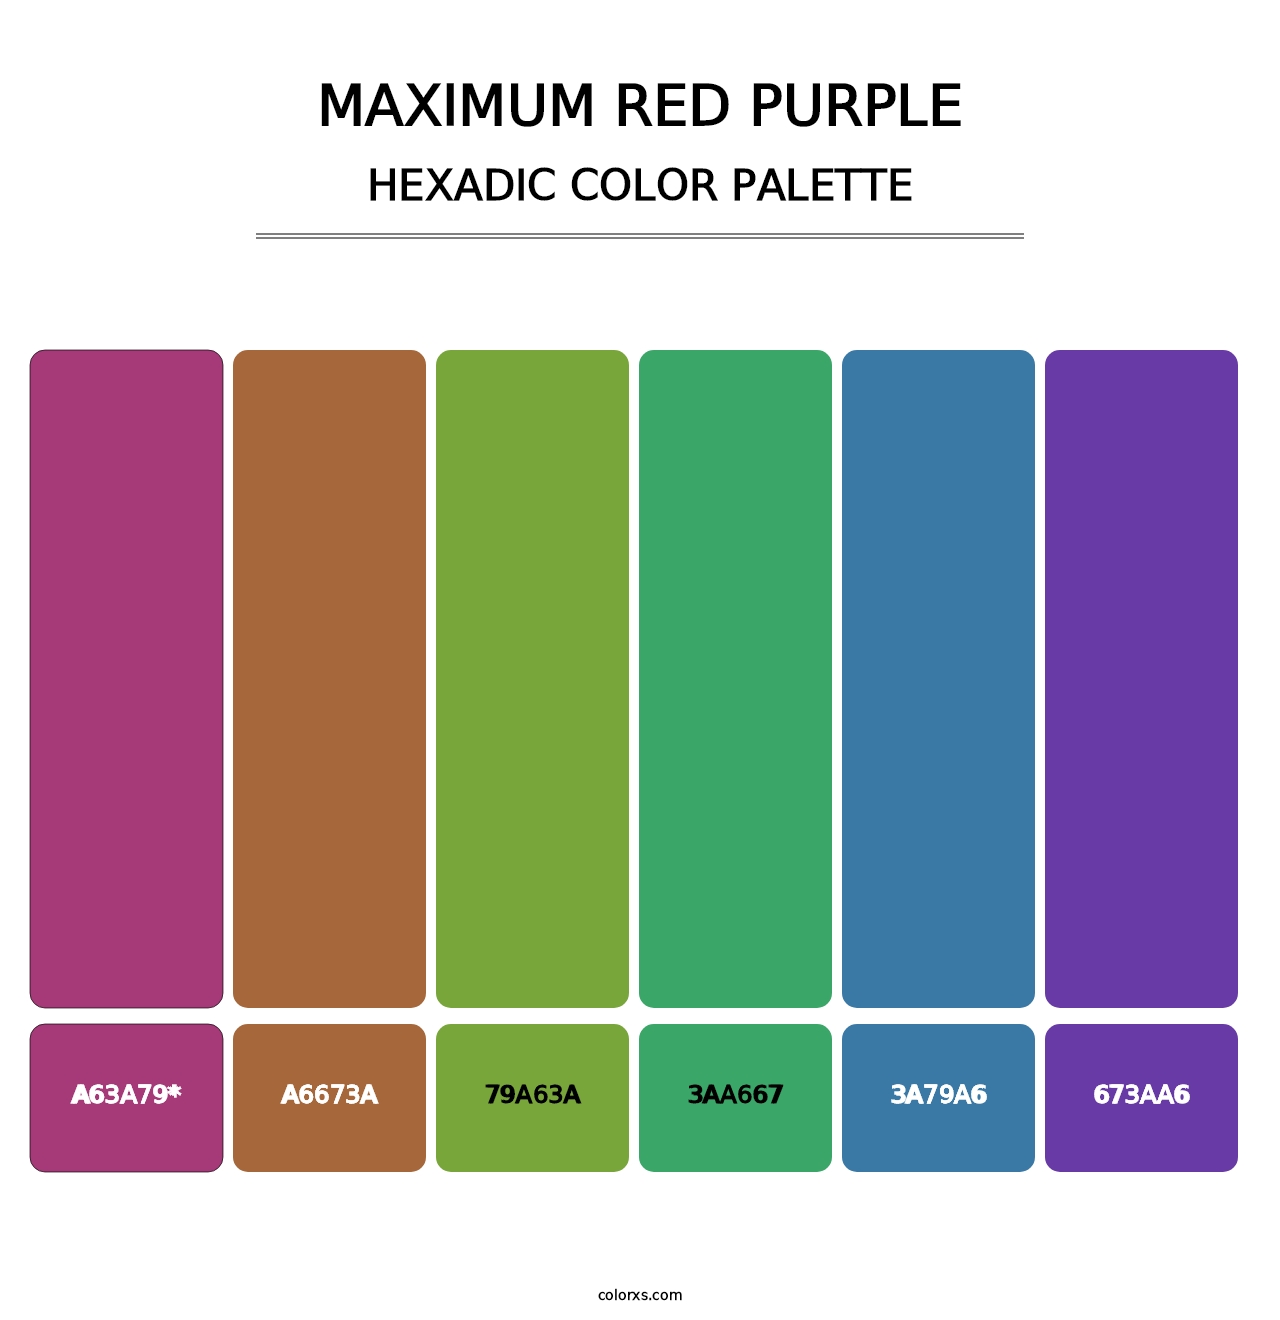 Maximum Red Purple - Hexadic Color Palette